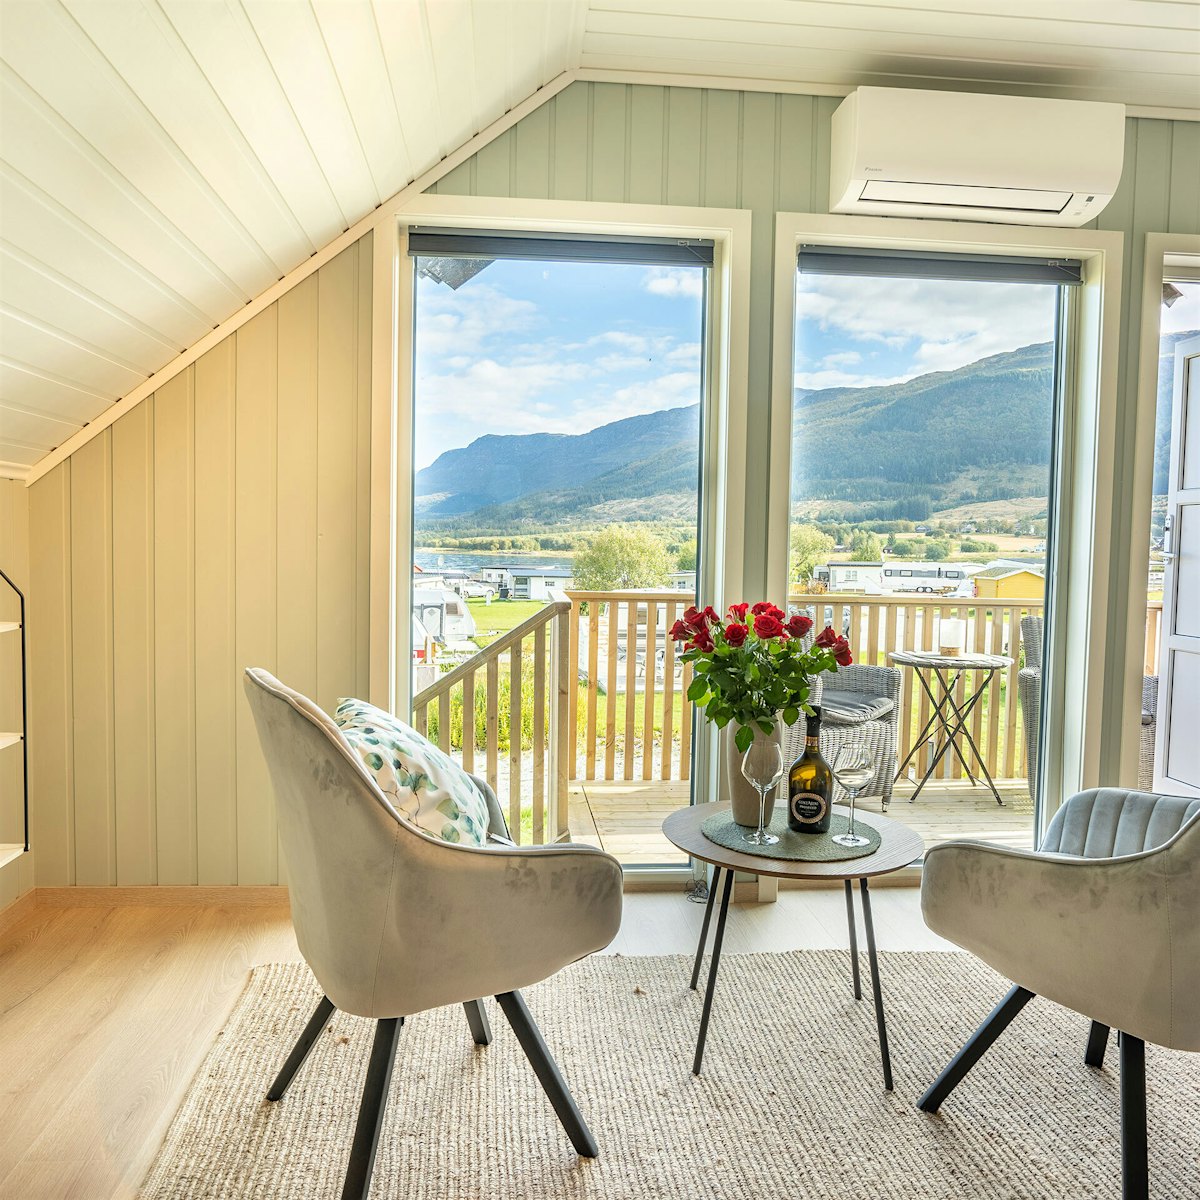 Helles und modernes Wohnzimmer mit großen Fenstern, zwei Stühlen und einem Tisch mit Rosen darauf. Blick auf Berge und Meer. Foto